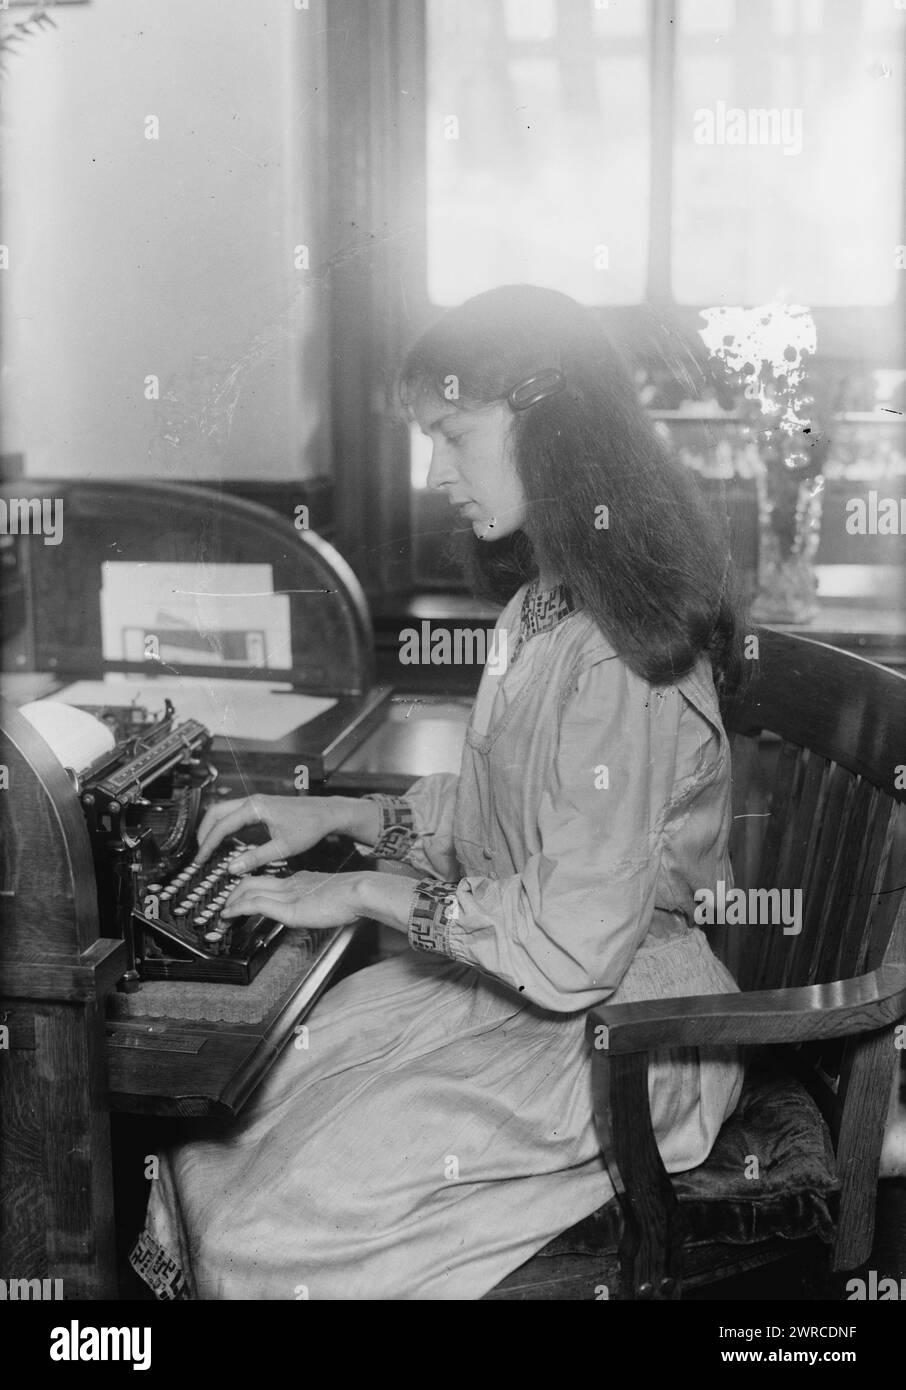 Hamlin, la fotografia mostra l'attore bambino Sally Hamlin (1902-1987) che ha anche fatto registrazioni di poesie. Sally e' seduta ad una macchina da scrivere, tra ca. 1915 e ca. 1920, Glass negative, 1 negativo: Glass Foto Stock